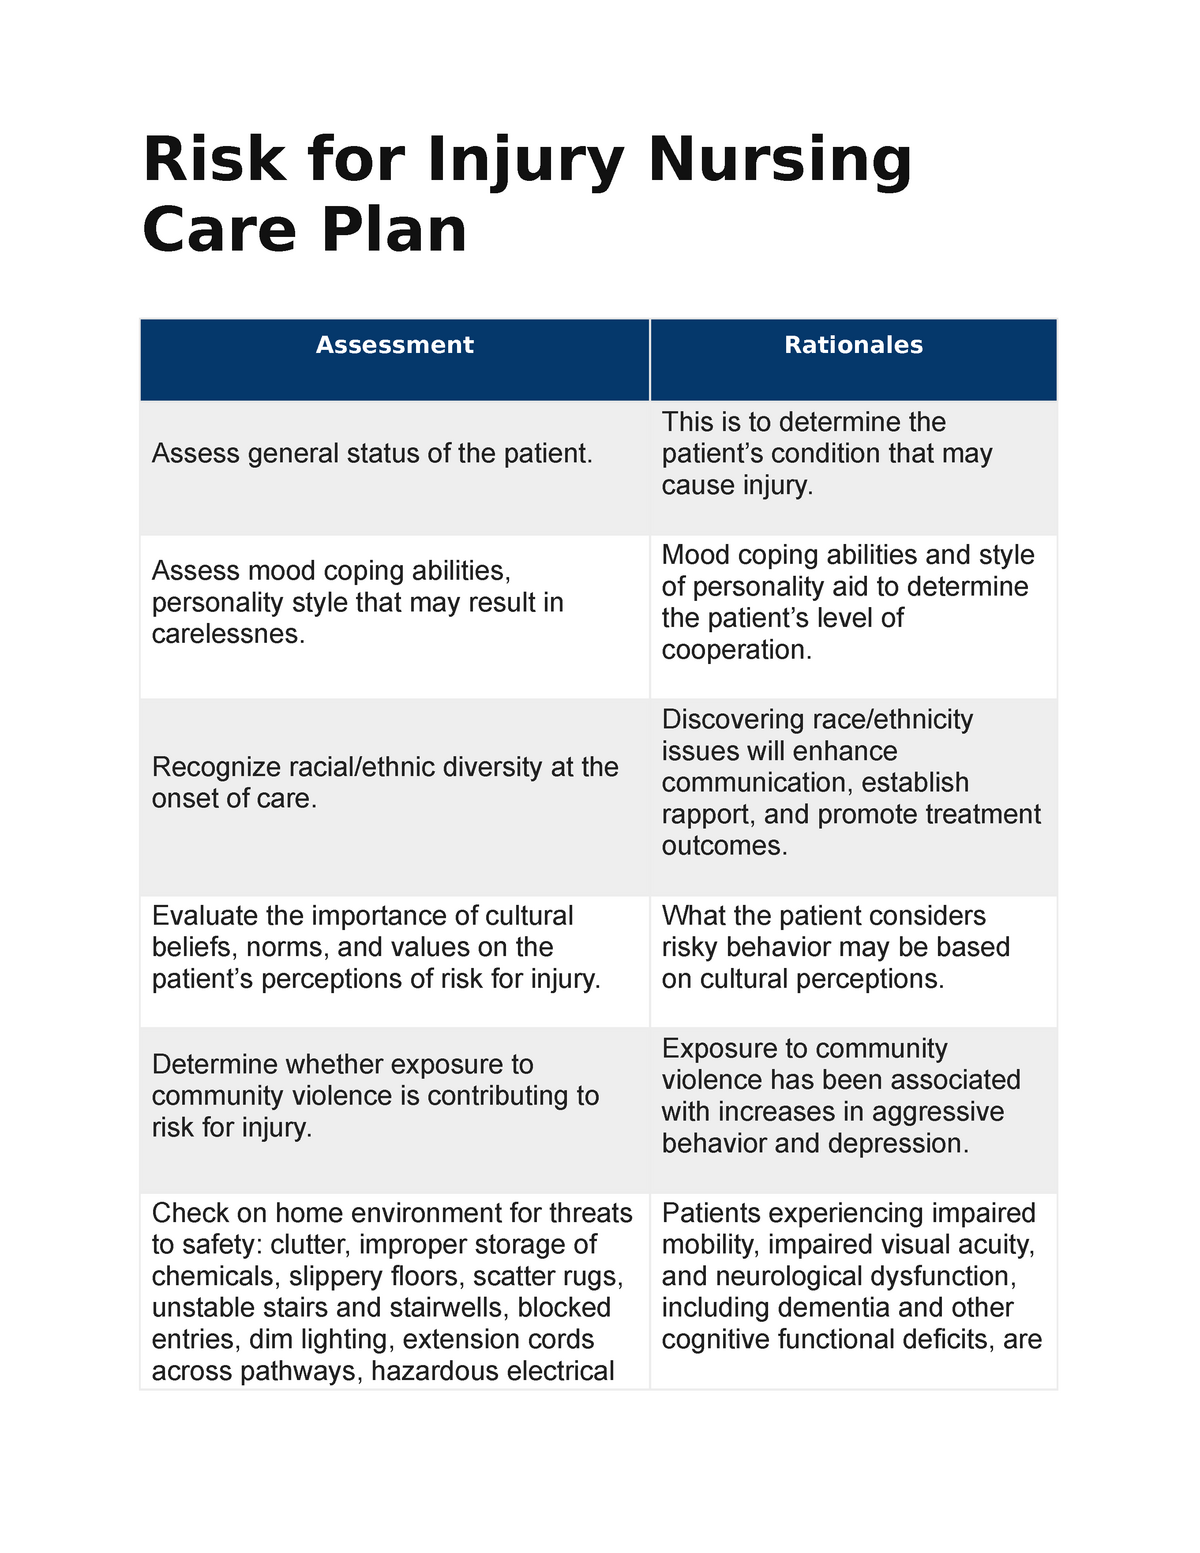 Nursing Care Plan Risk Injury Care Plan Final Plan Assessment